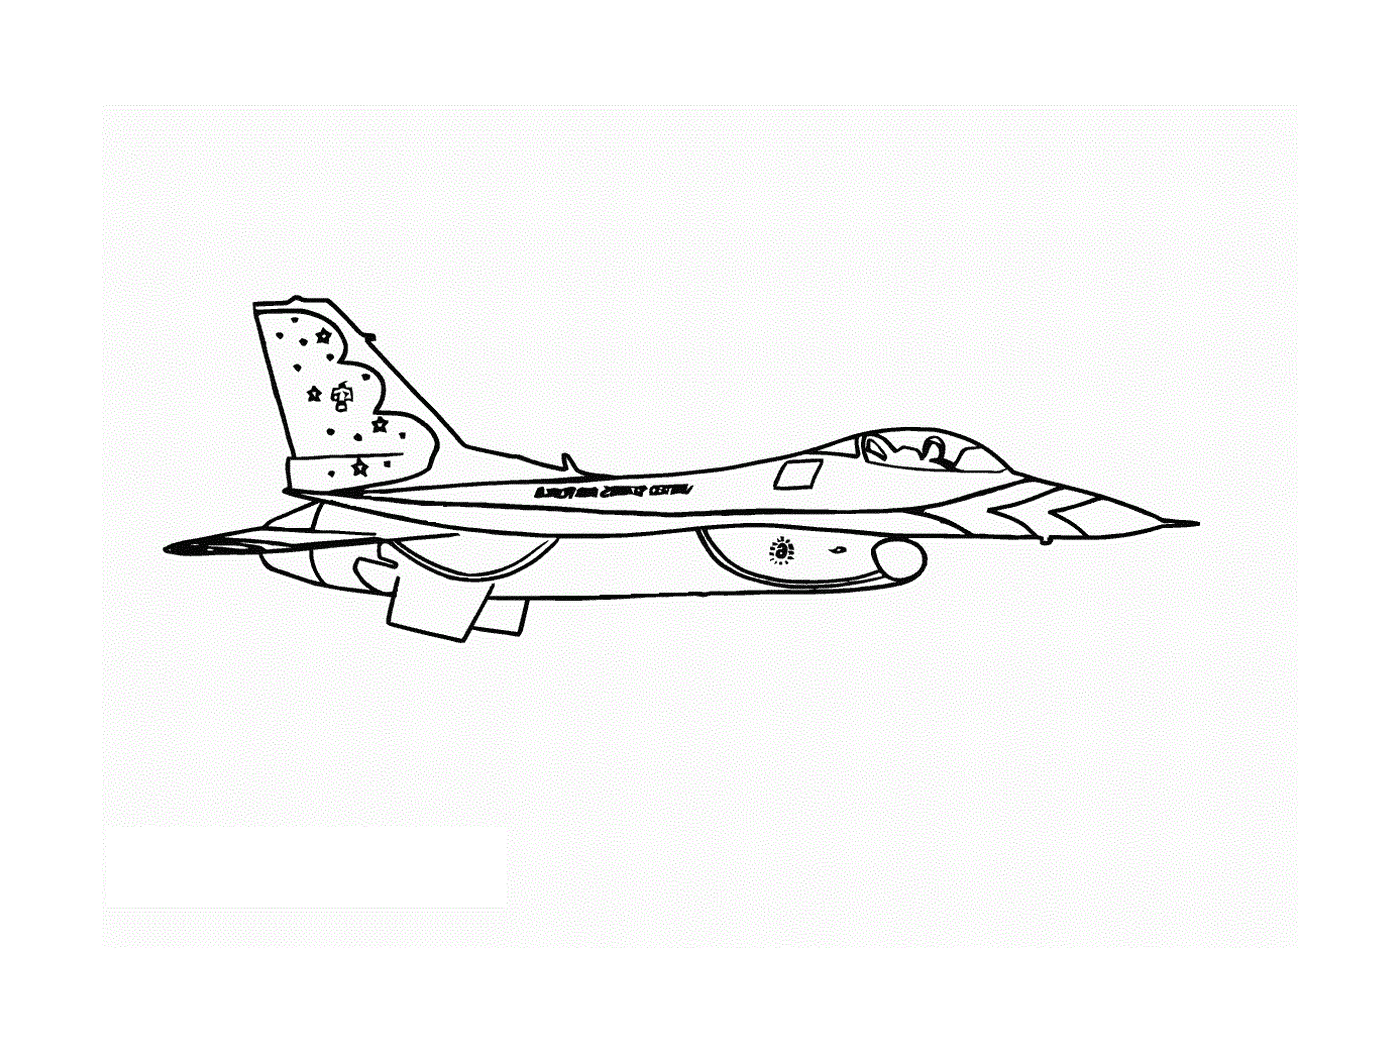  Um avião de caça é desenhado 